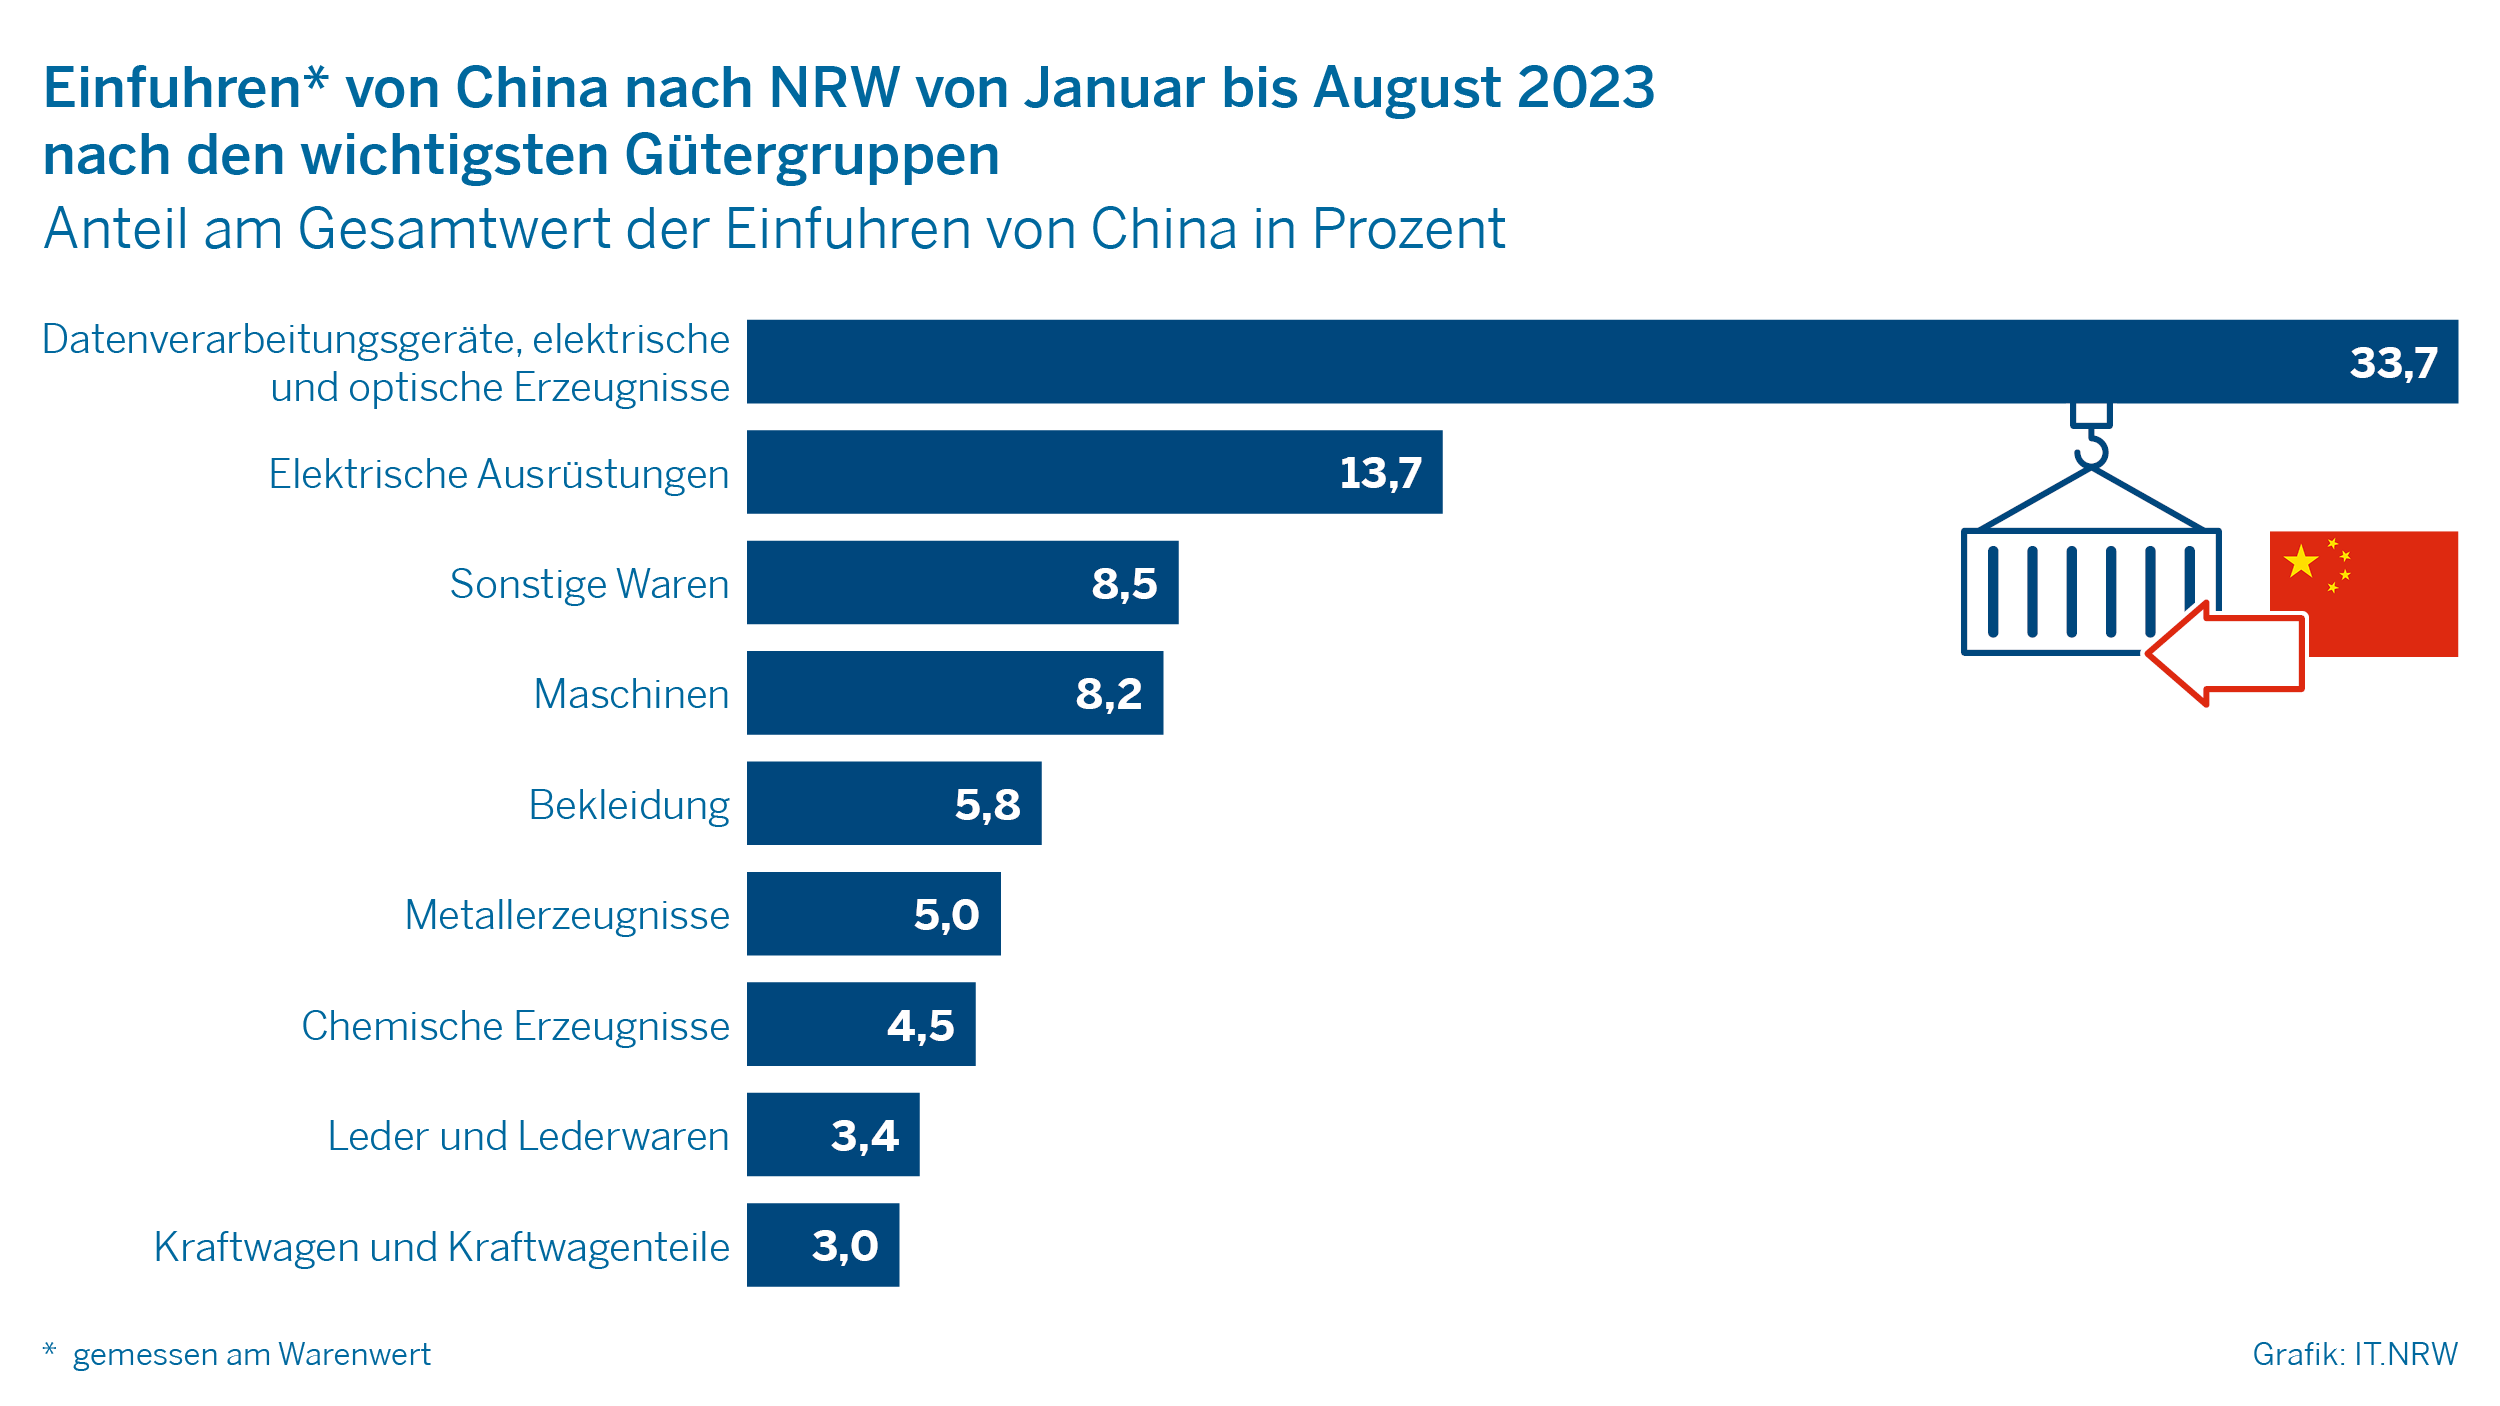 Einfuhren von China nach NRW von Januar bis August 2023 nach den wichtigsten Gütergruppen